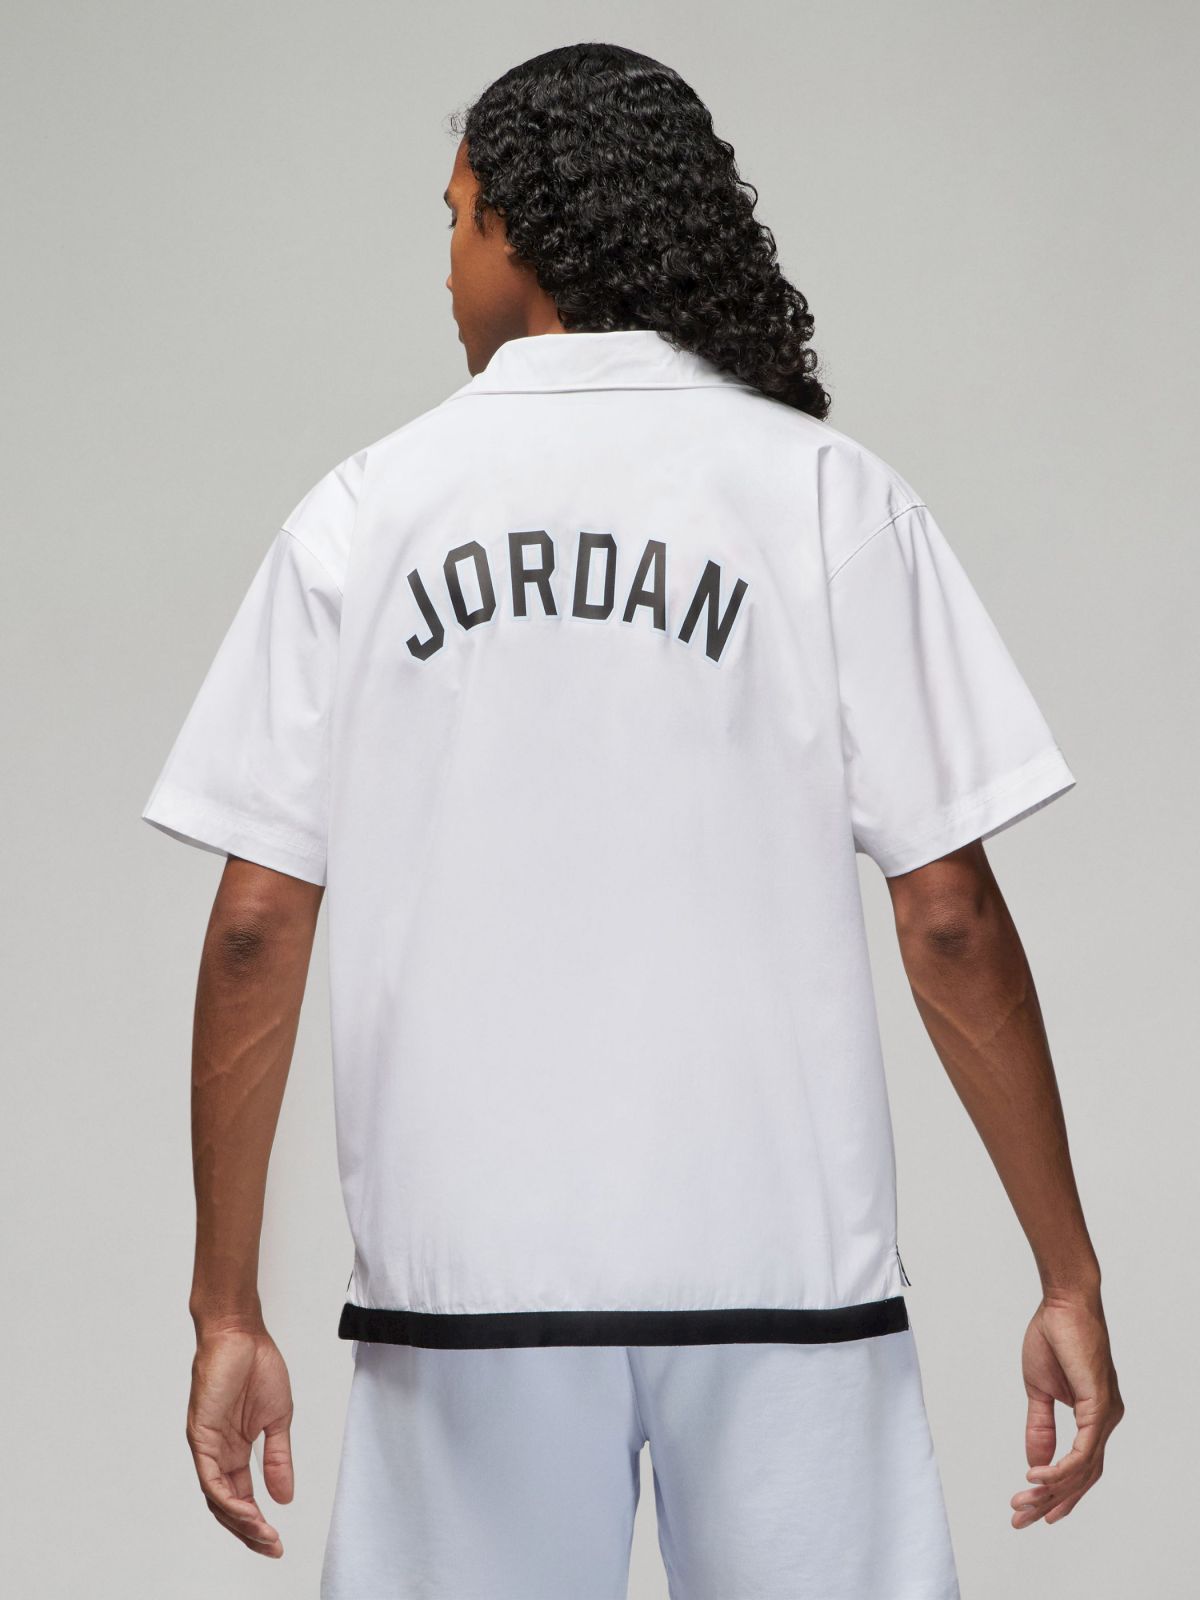  חולצת ג'ורדן מכופתרת Jordan Sport DNA של JORDAN